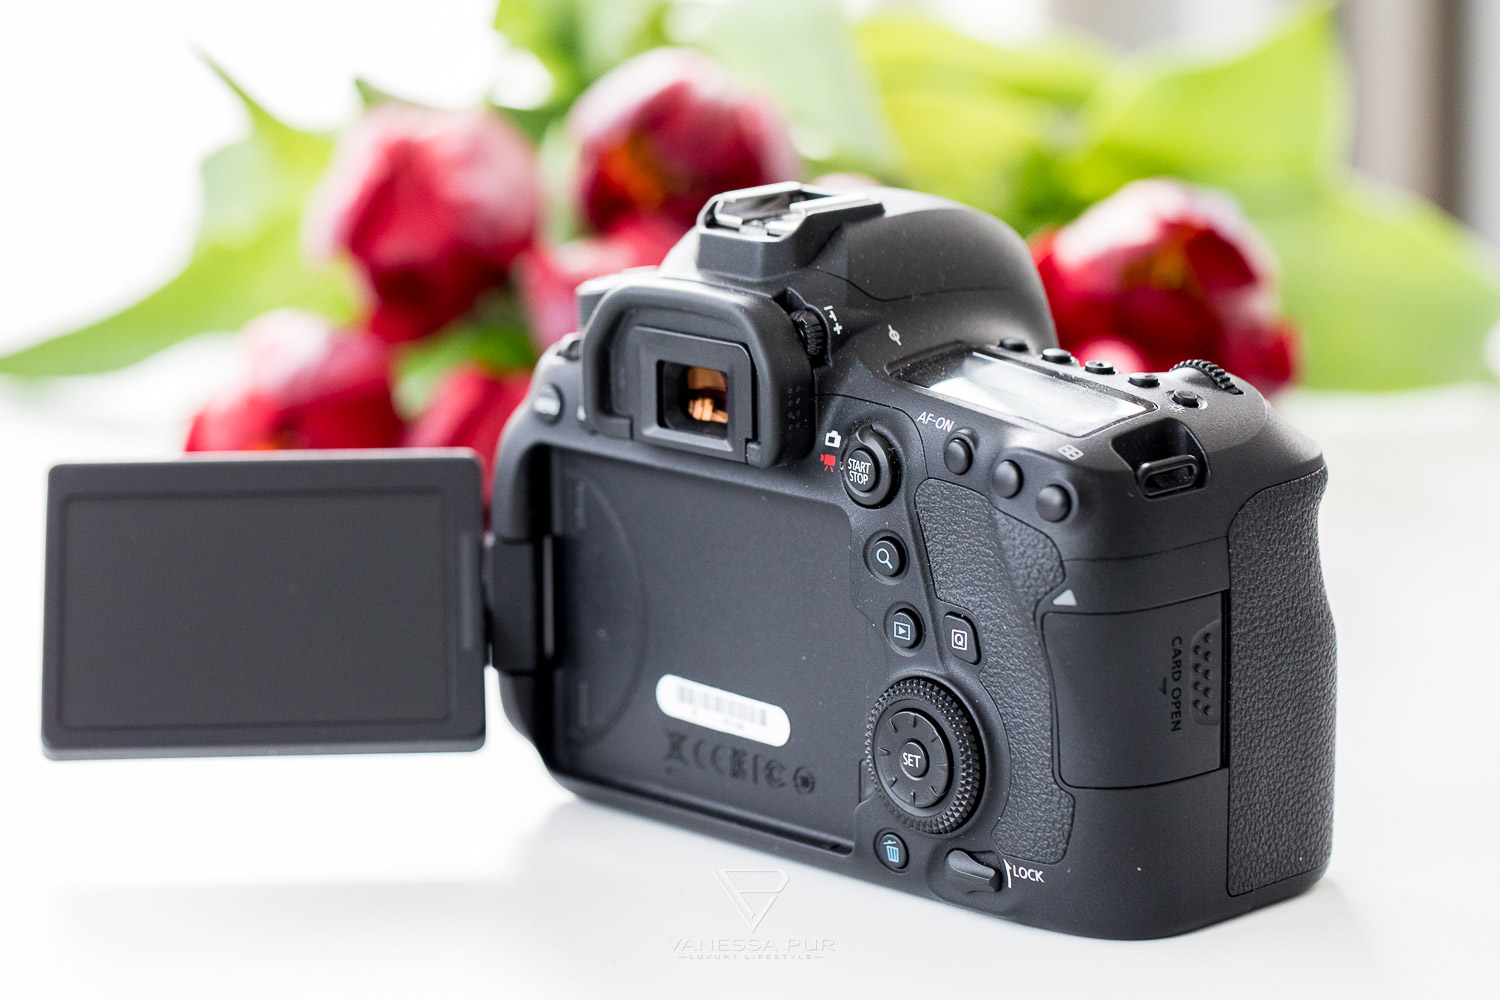 Canon 6D Mark II im Langzeittest - Kamera für Fotografen und Video-Filmer - wie gut ist die Vollformat-Kamera von Canon für Fotografen, Vlogger und YouTuber? Lohnt sich der Umstieg? Welche Alternativen gibt es?